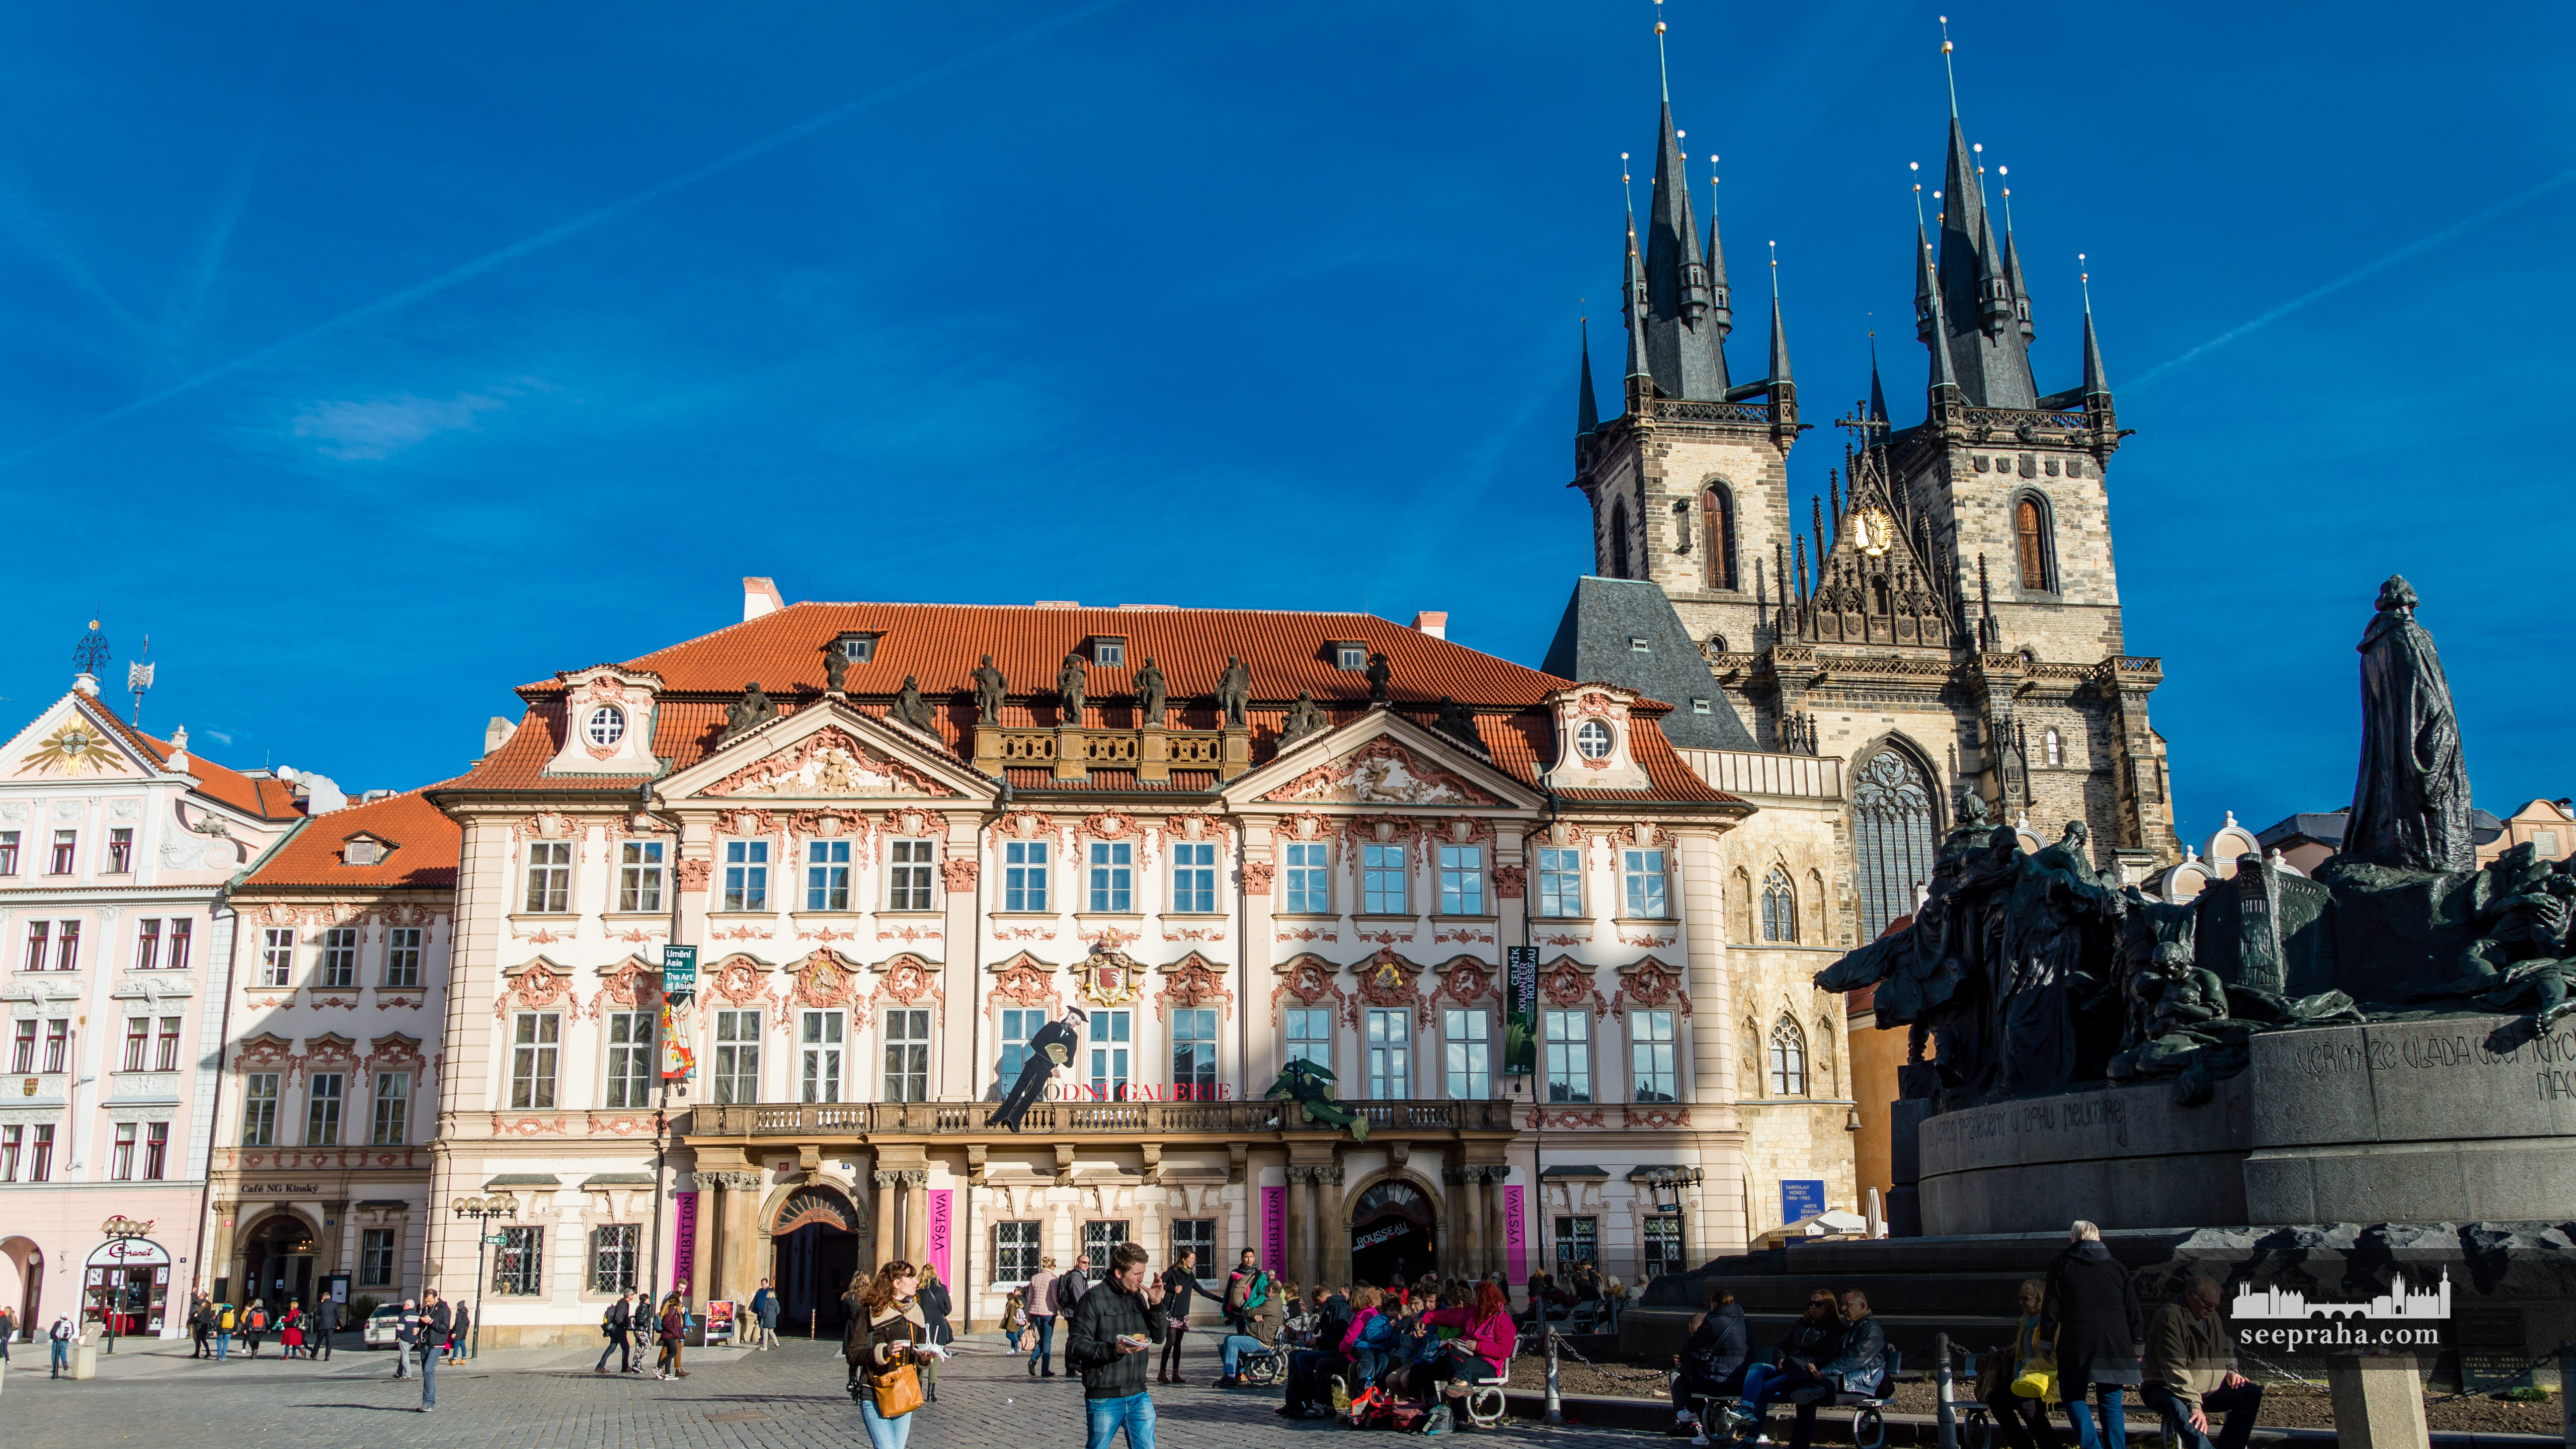 Der Kinski-Palast (die Nationalgalerie) und die Teynkirche, Prag, Tschechien